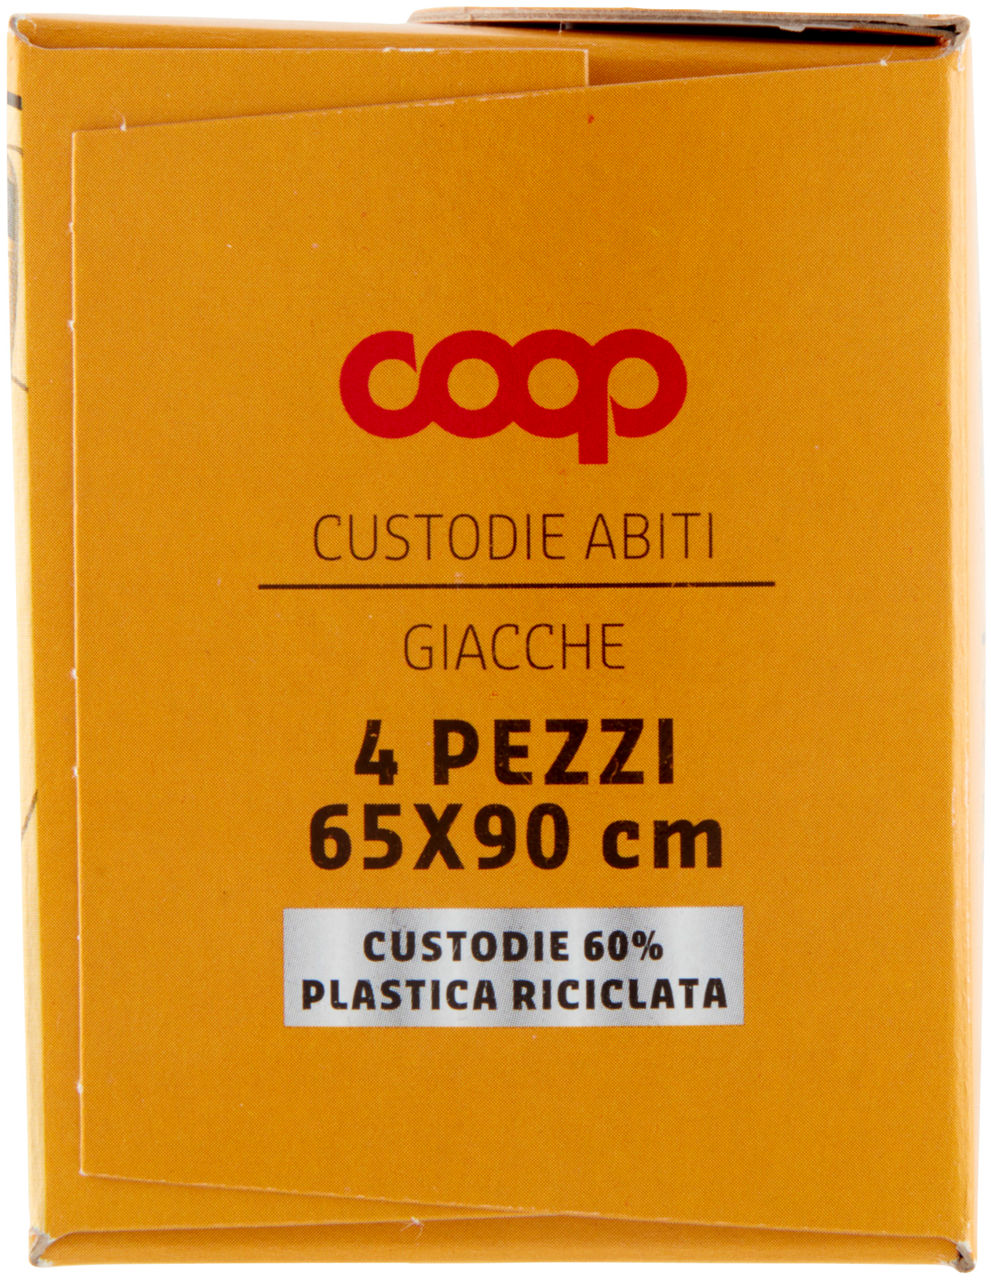 CUSTODIE COOP ABITI E GIACCHE IN PLASTICA RICICLATA - 4PZ - 3